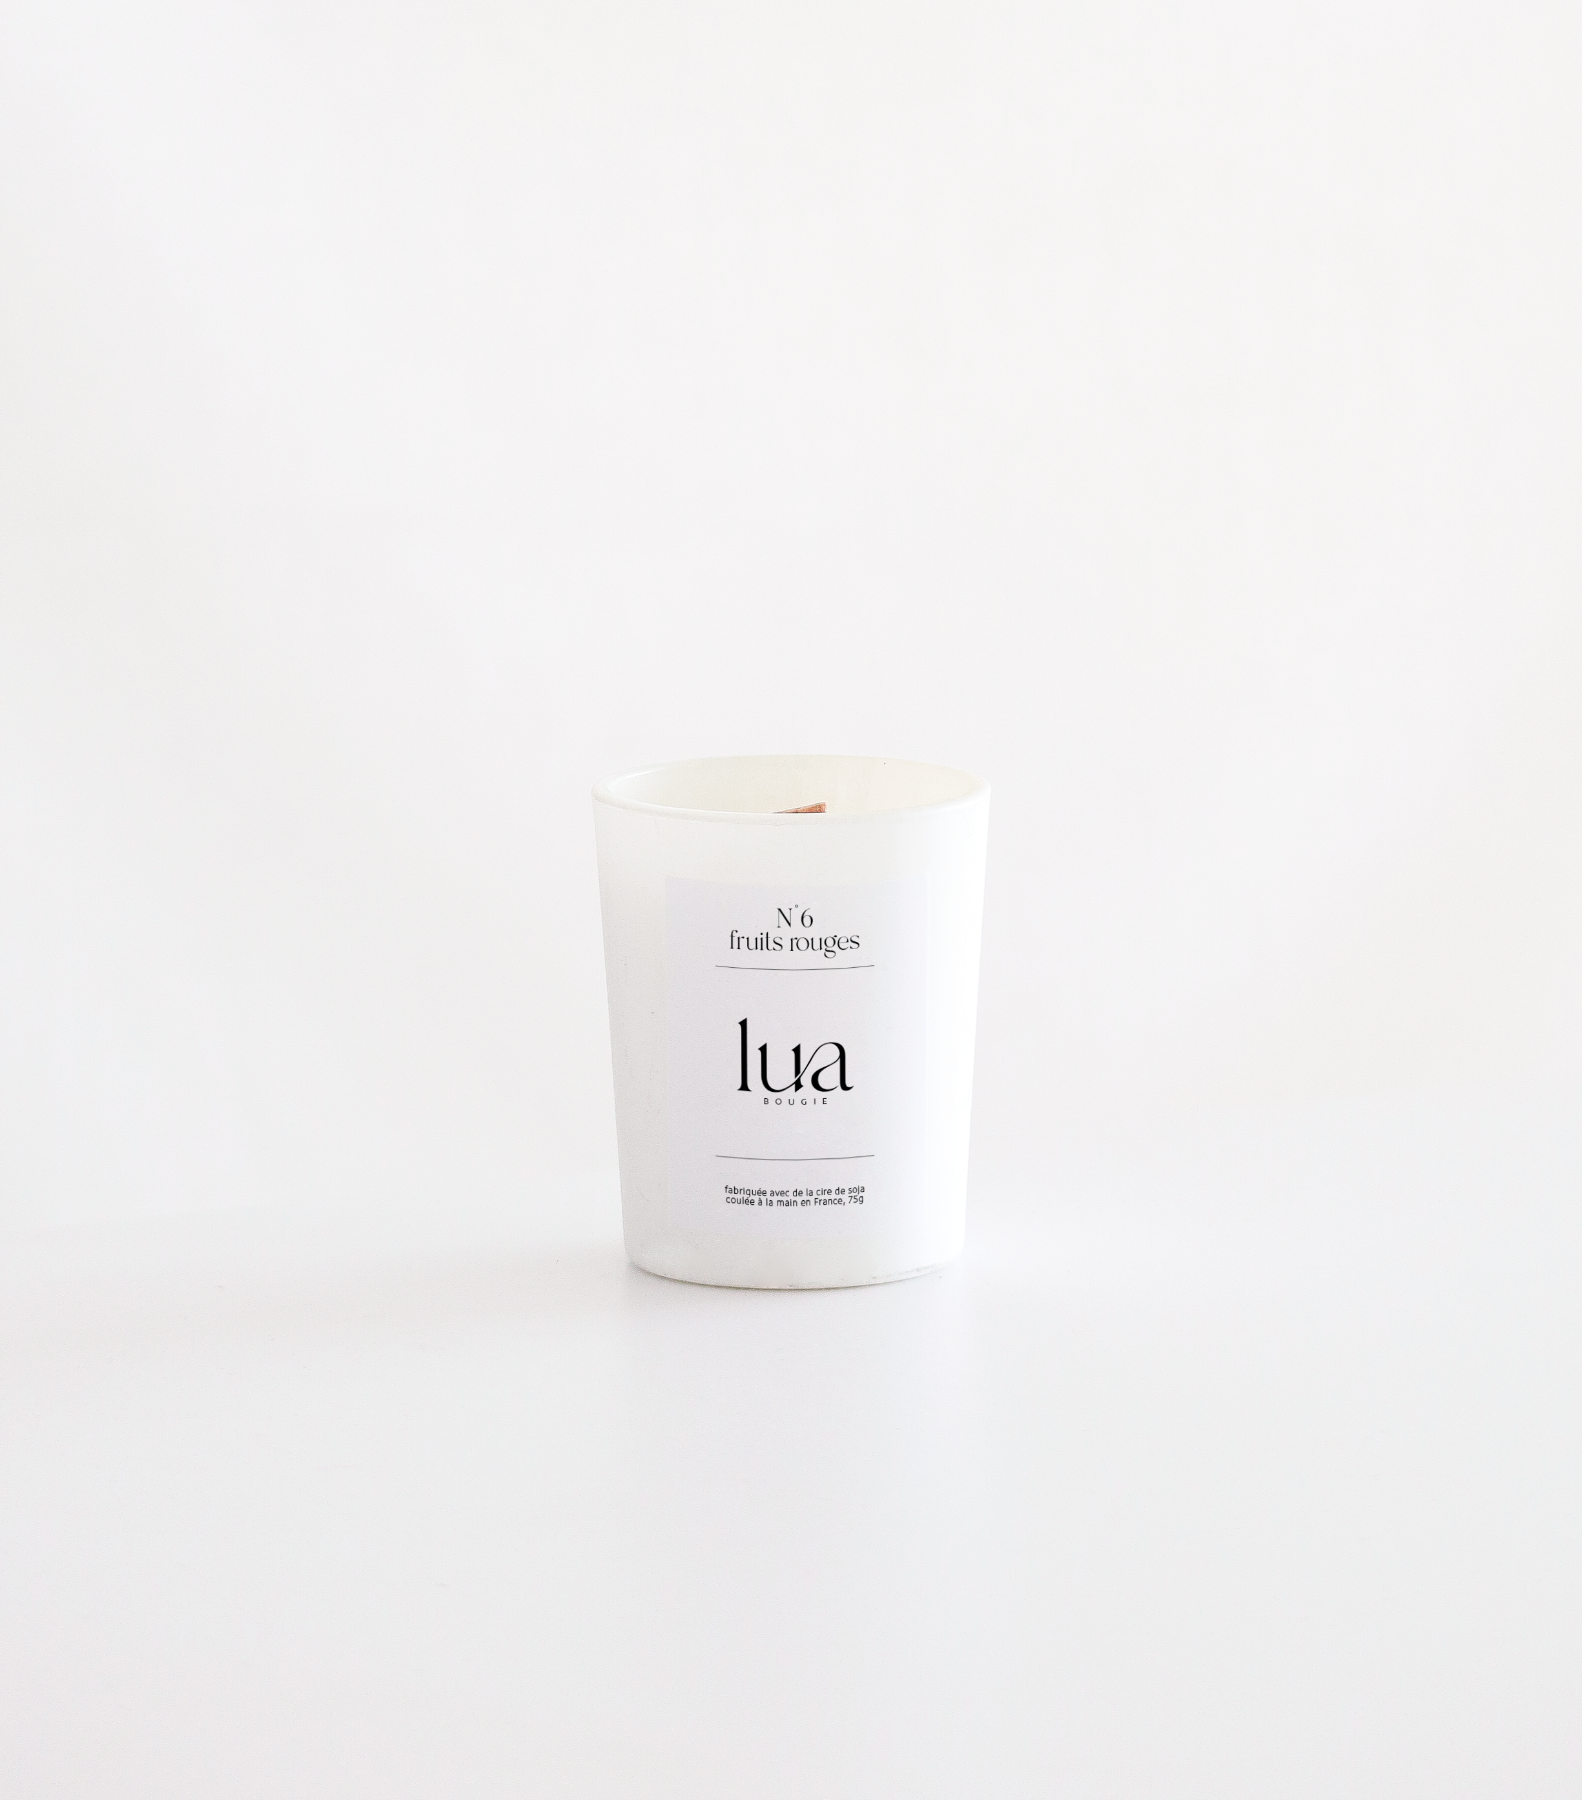 Bougie Lua parfumée et rechargeable, contenant blanc, 75g. 